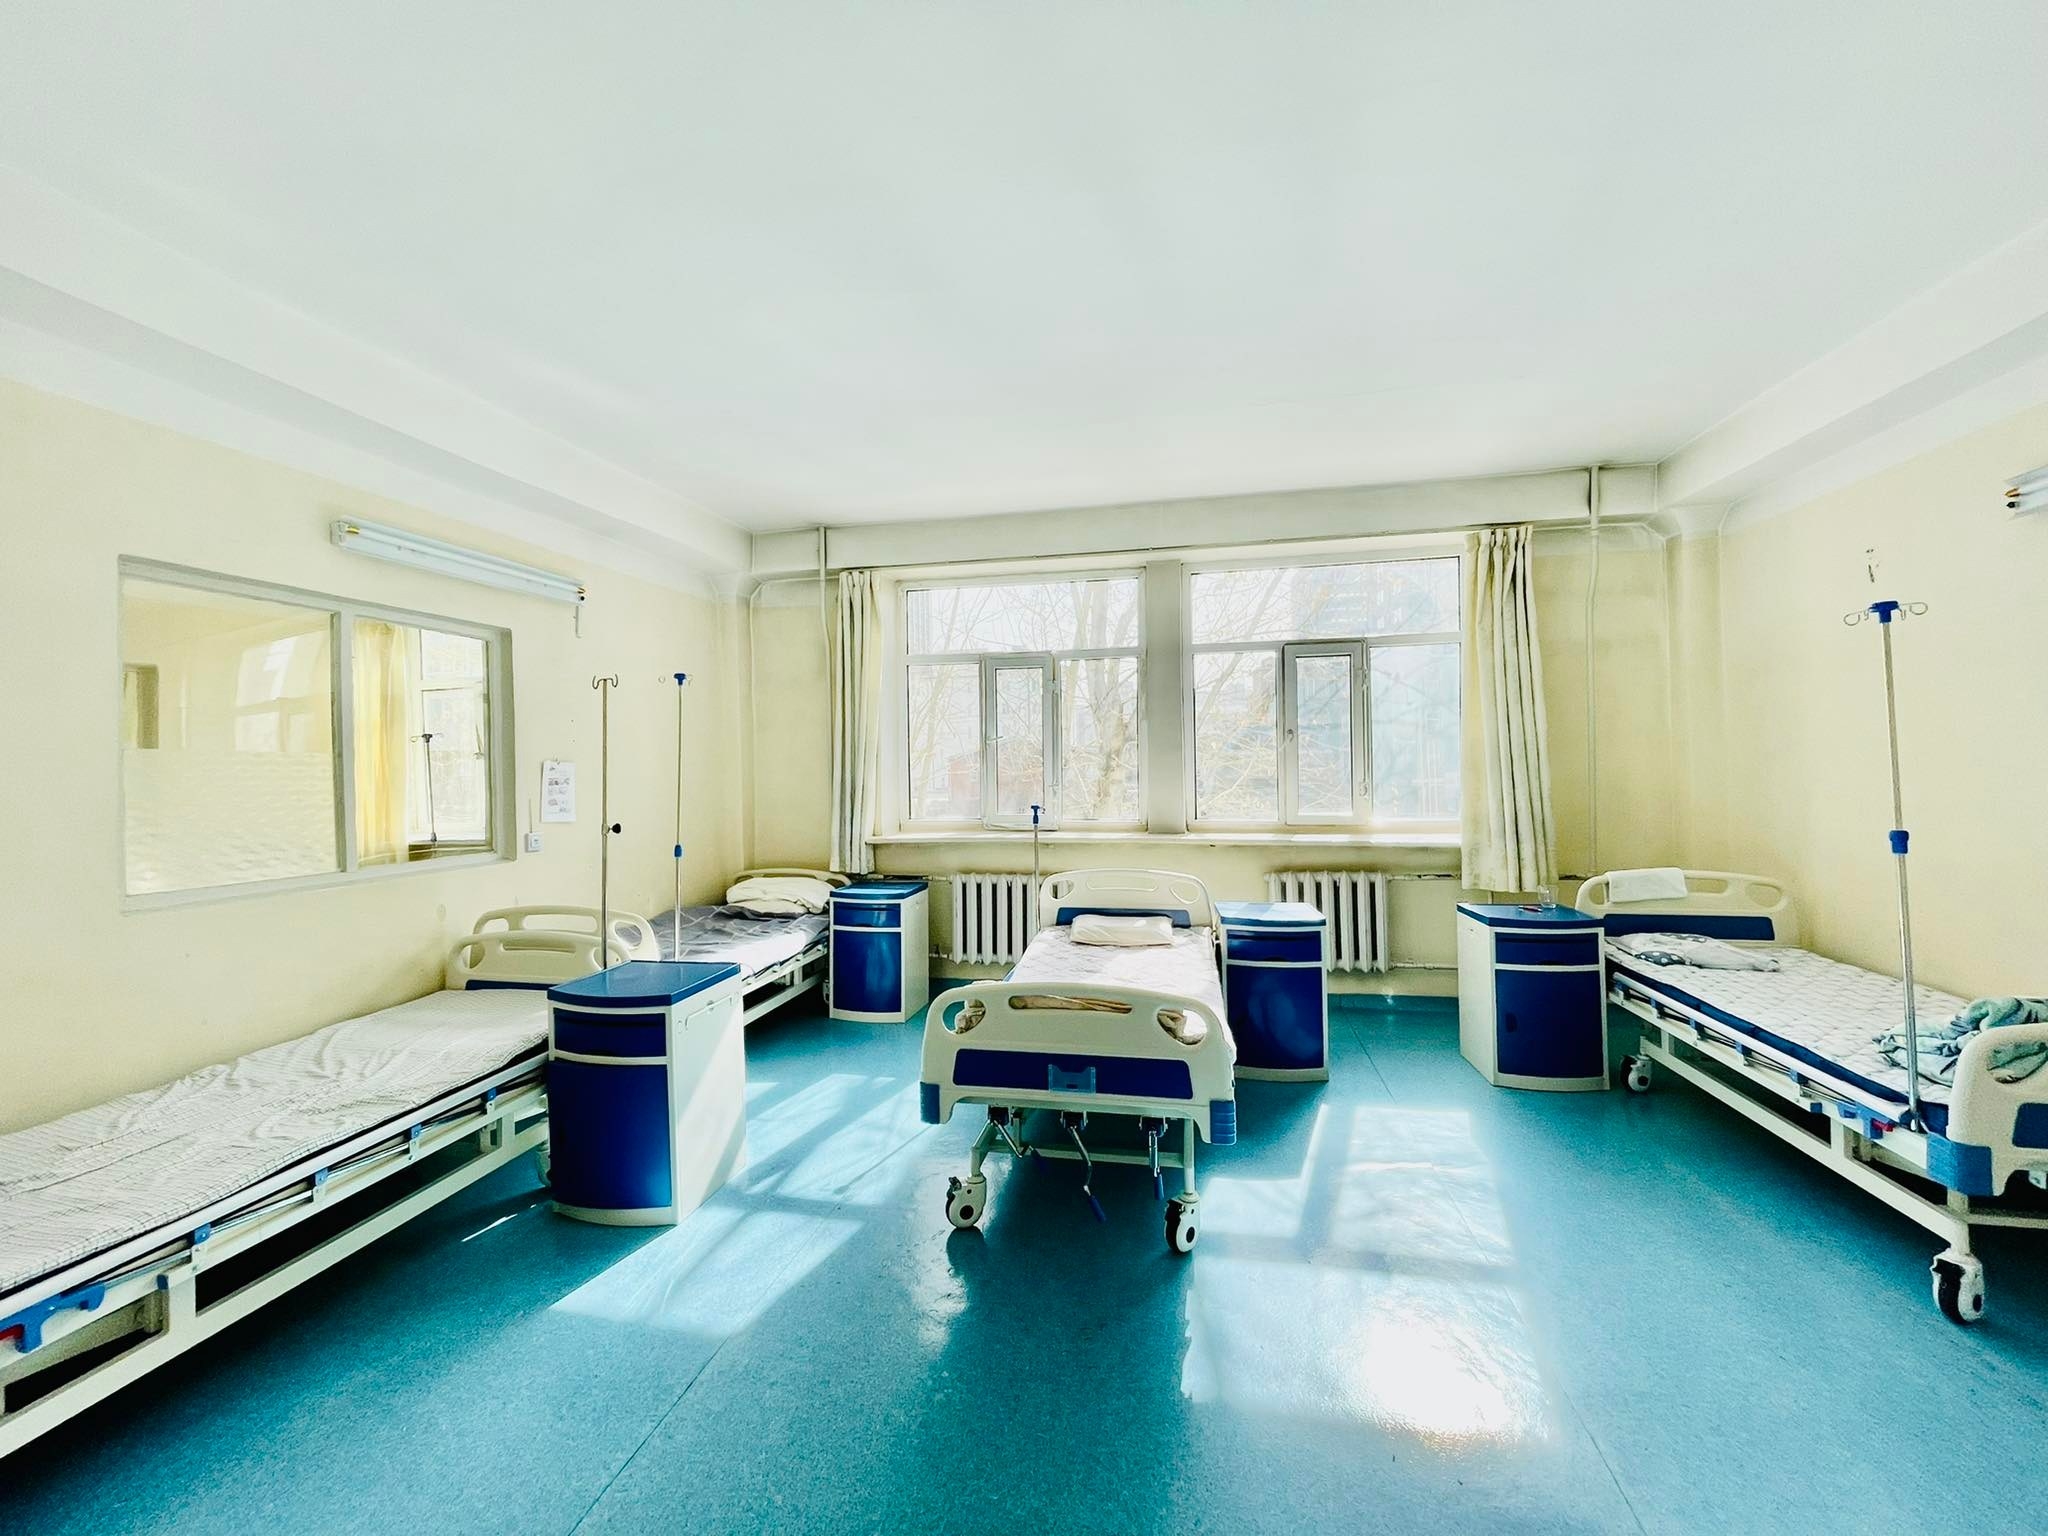 “Өргөө Амаржих Газар” төрөлжсөн мэргэшлийн эмнэлэгт Өвчтөний иж бүрэн орыг нэмэлтээр 235 ширхэг, нийт 335 орыг хүлээлгэн өглөө.